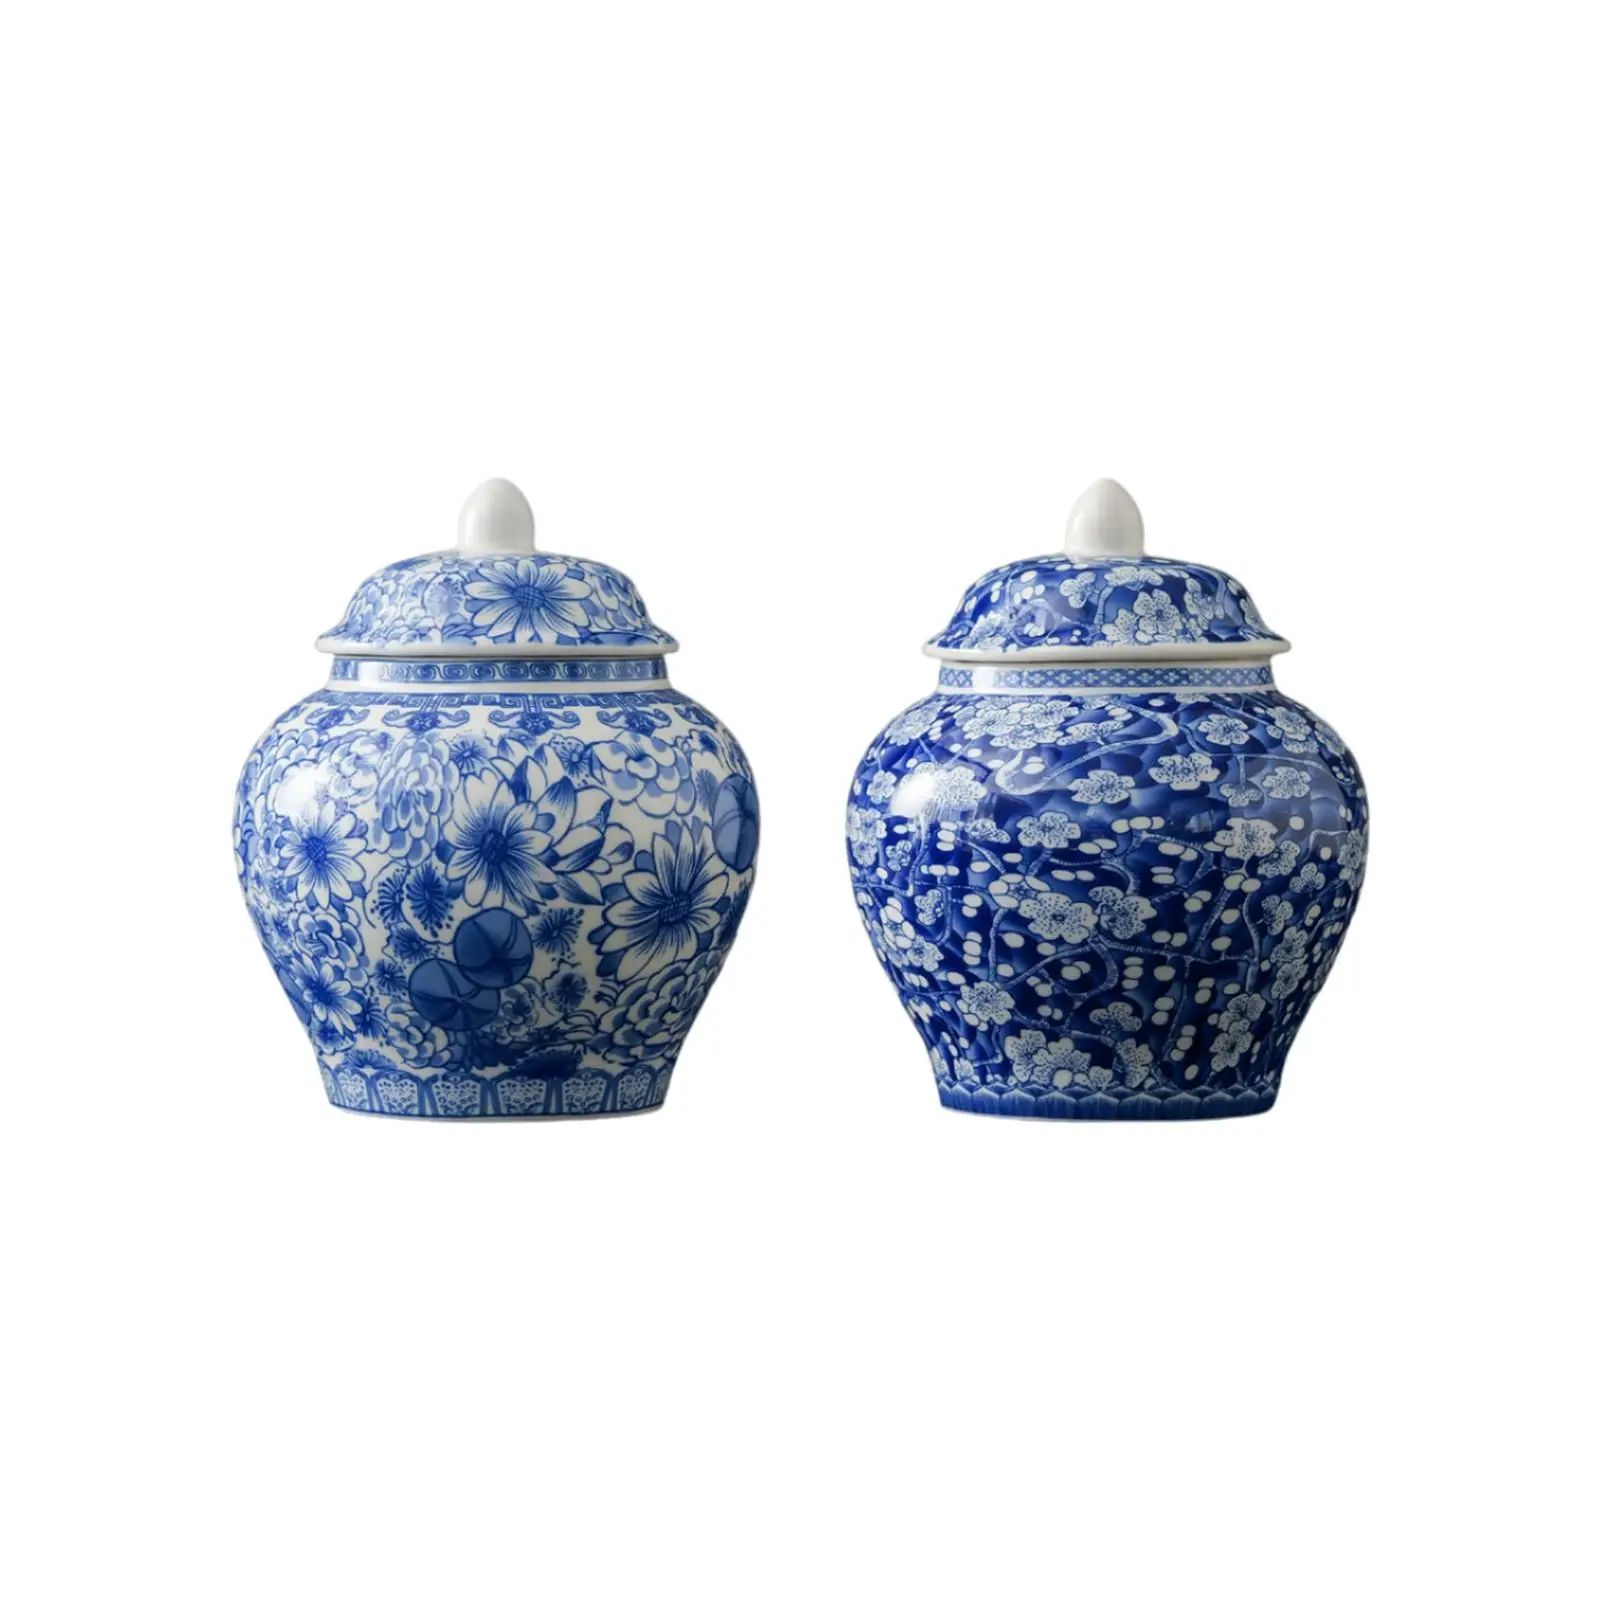 Blue and White Porcelain Ginger Jar Indoor Weddings Desktop Arrangement Versatile Home Floral Office Chinese Decorative Vase